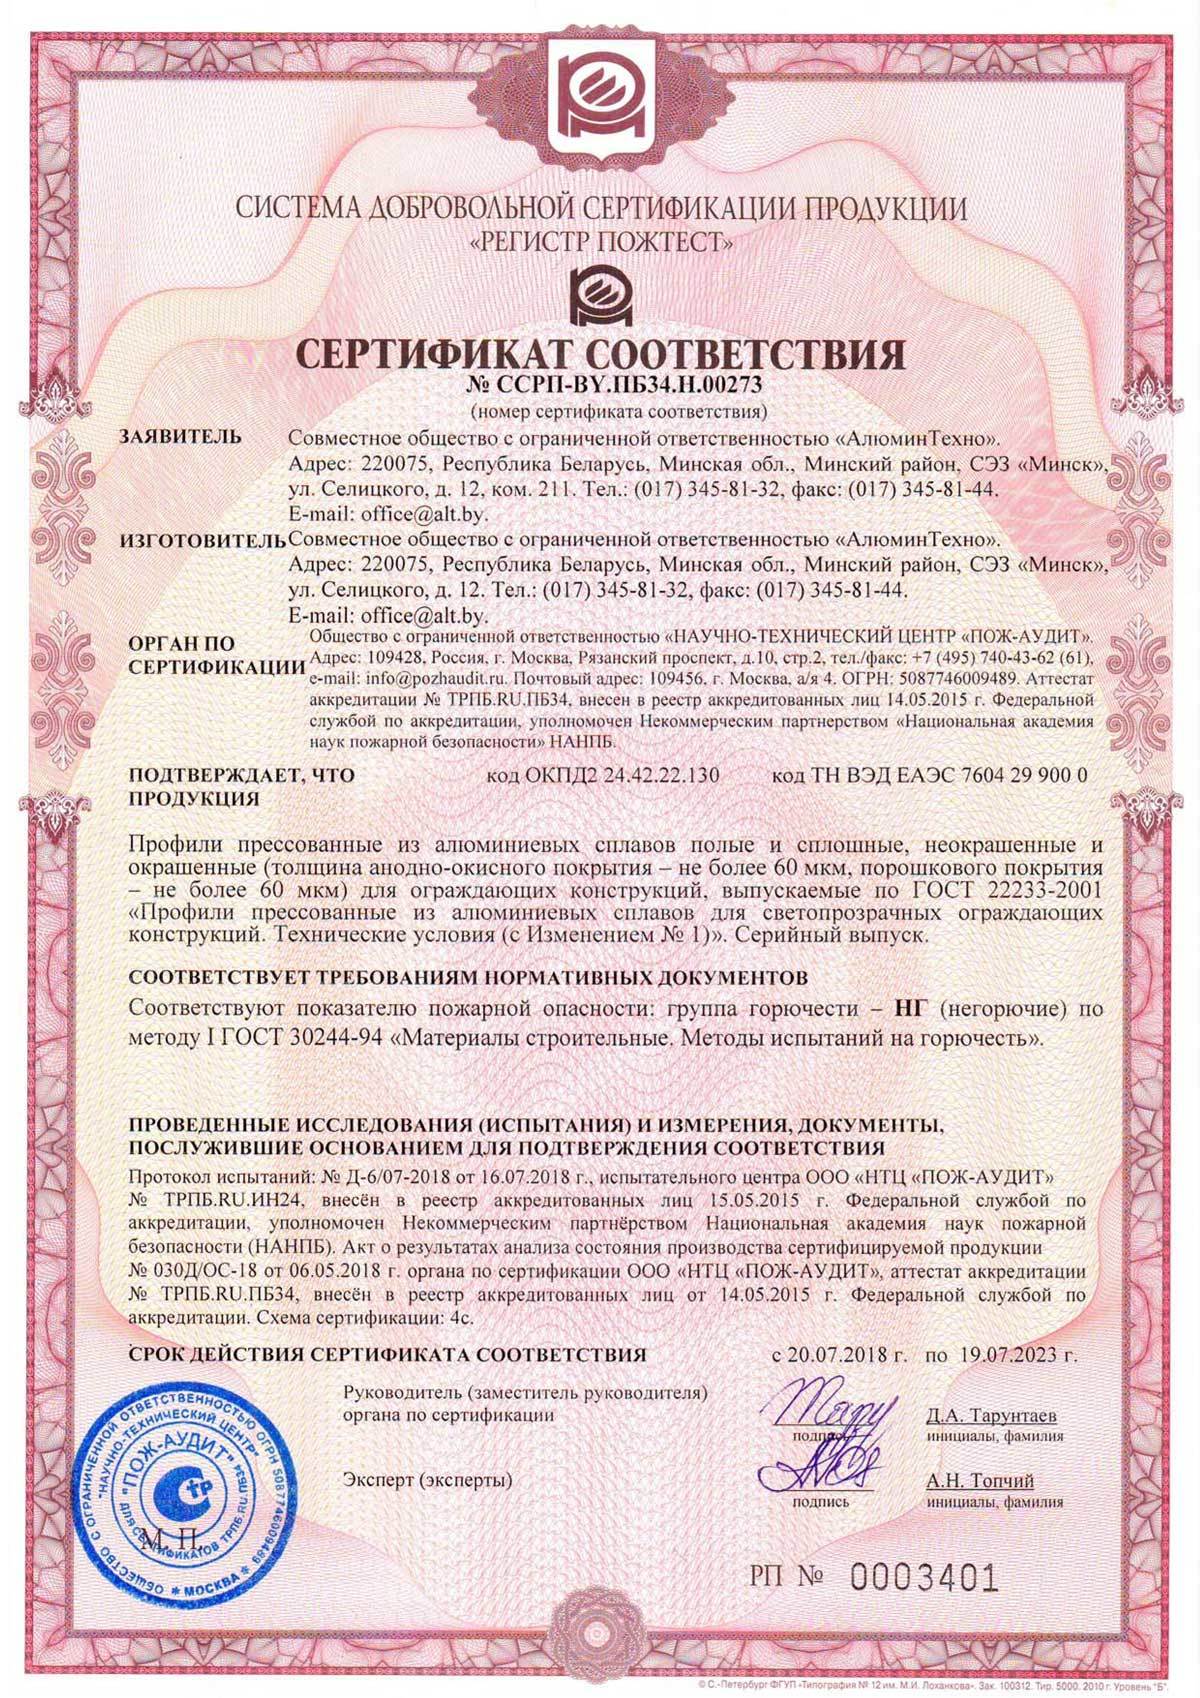 Сертификат соответствия (Пож-аудит) на профили роликовой прокатки Алютех